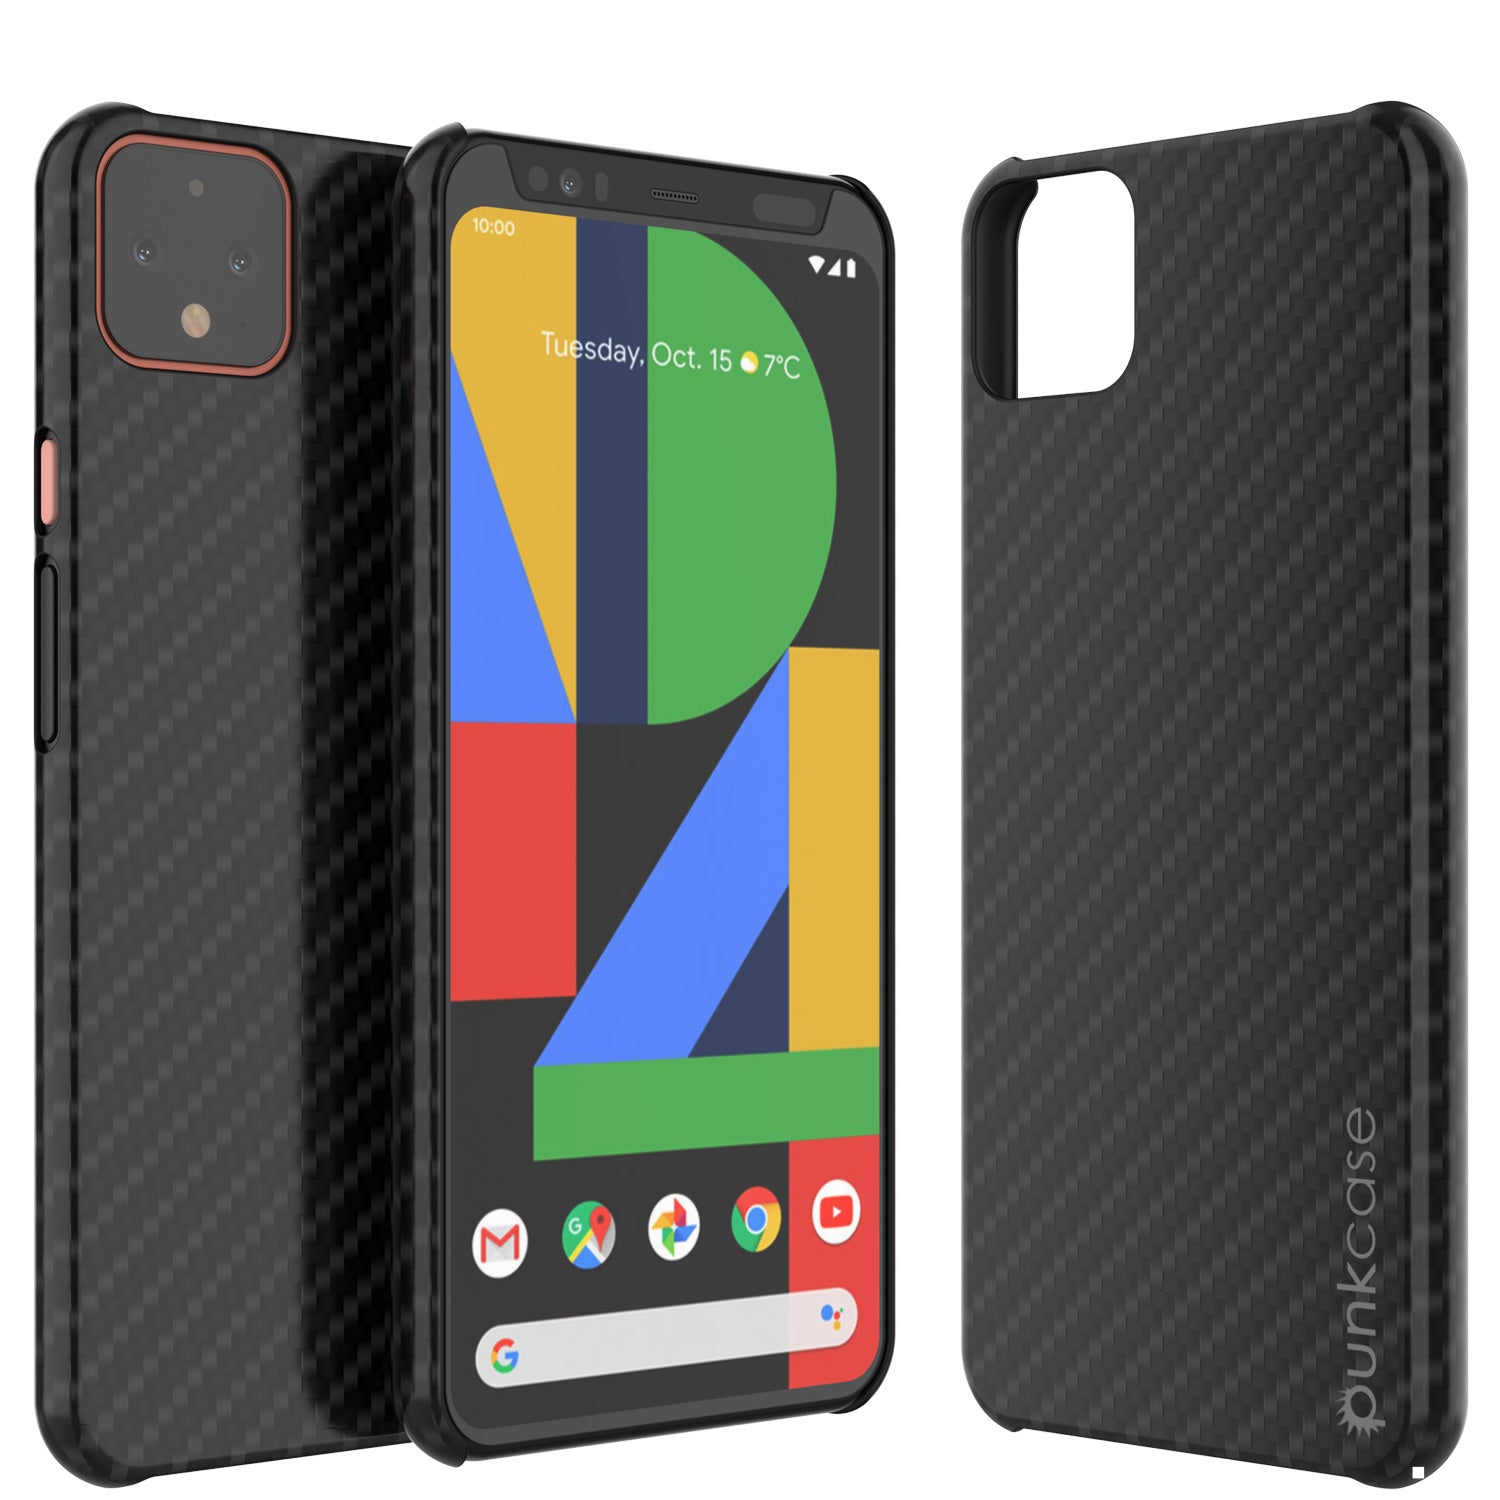 Google Pixel 4 XL Case - Carbon Fiber & Leather | Punkcase – punkcase